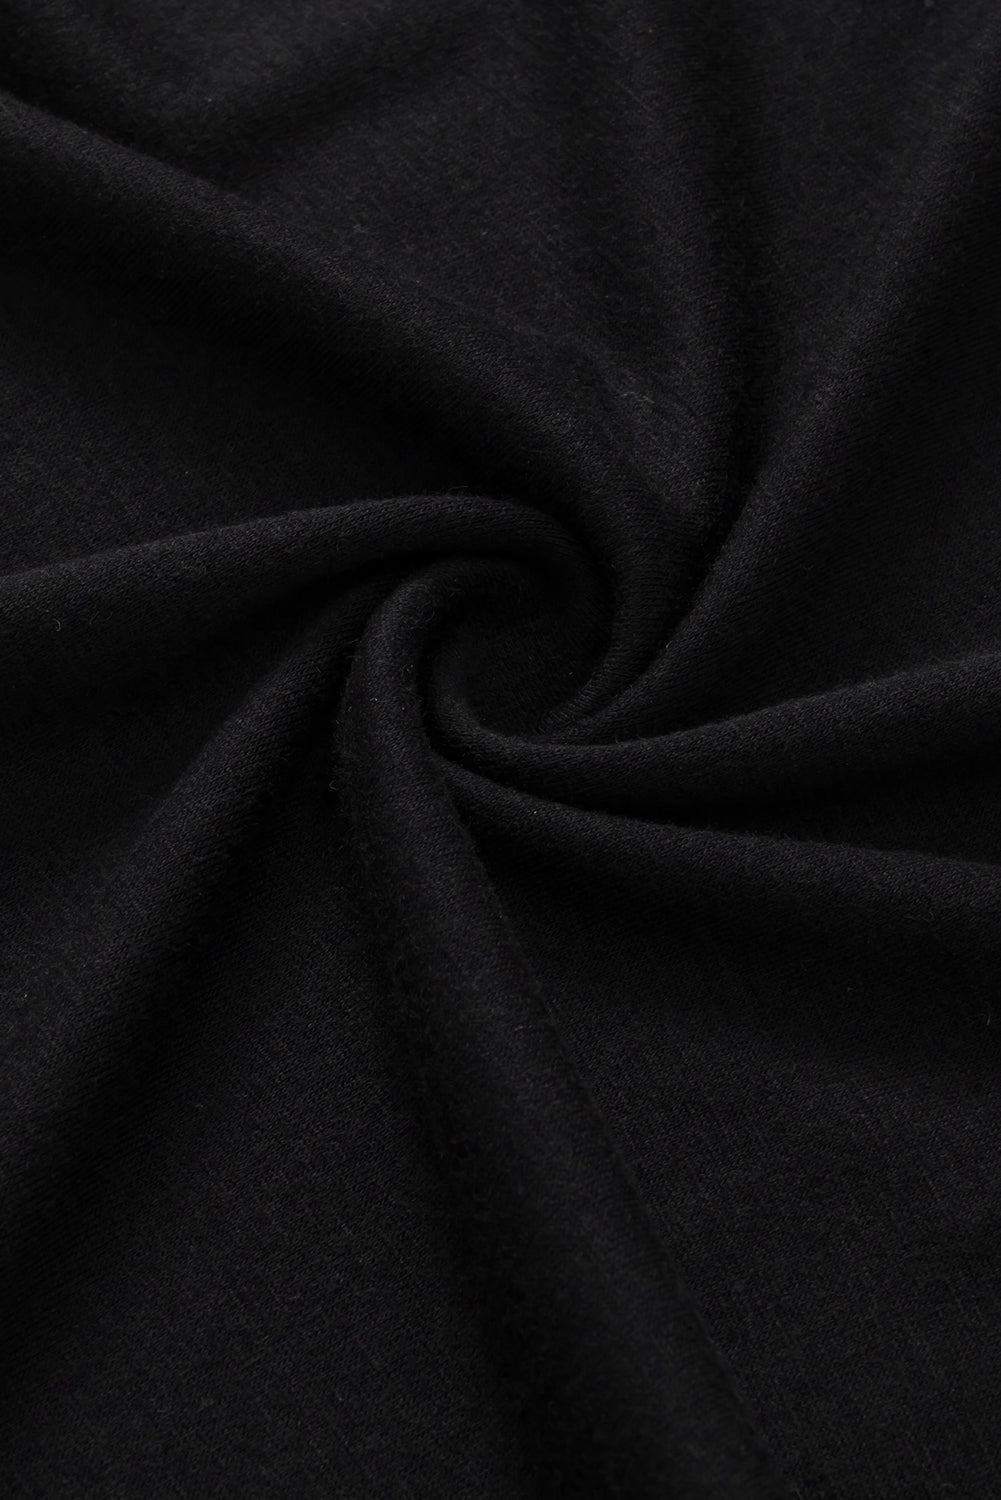 Crna majica sa zvjezdastim mrežastim lepršavim rukavima uskog kroja